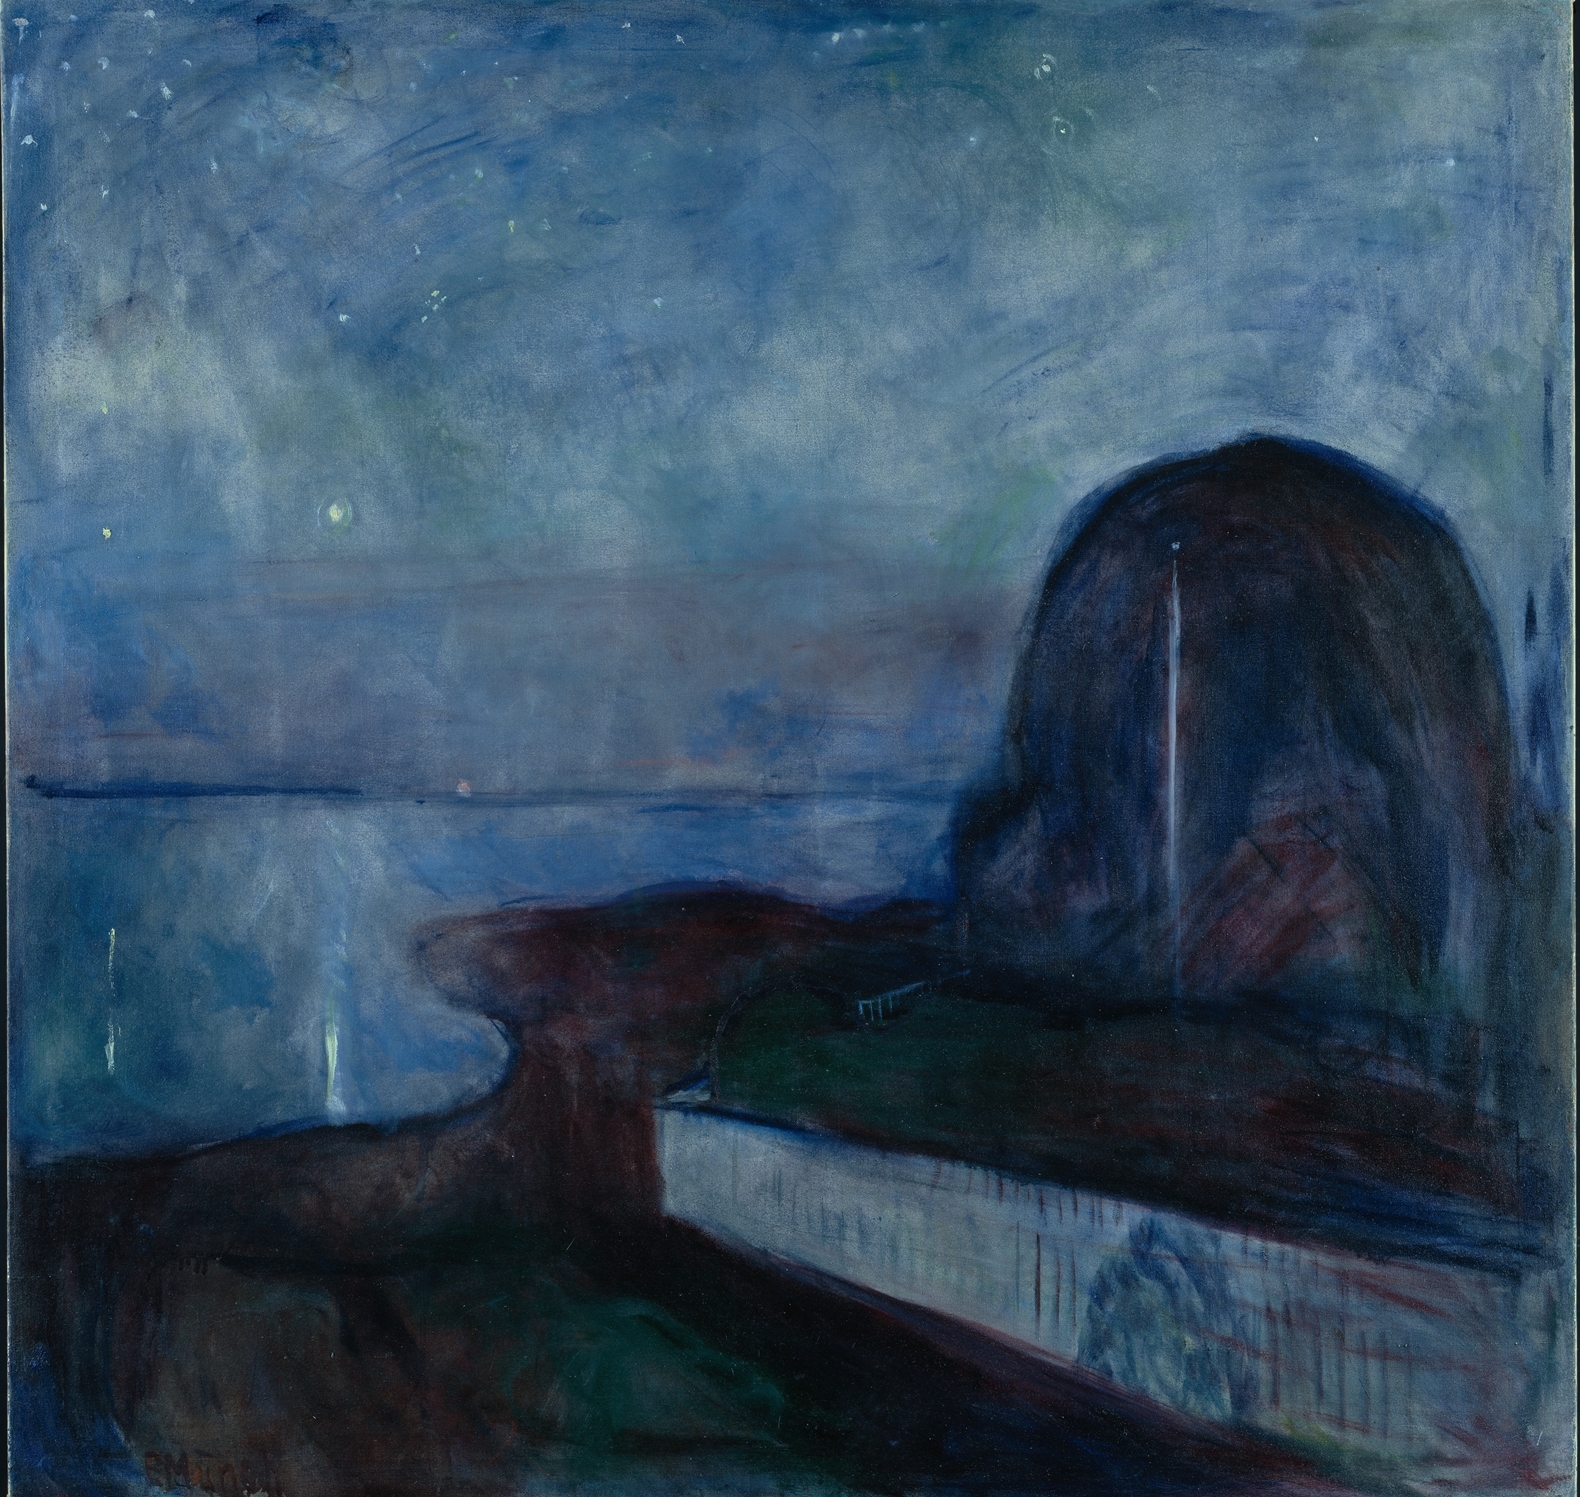 Edvard+Munch-1863-1944 (46).jpg